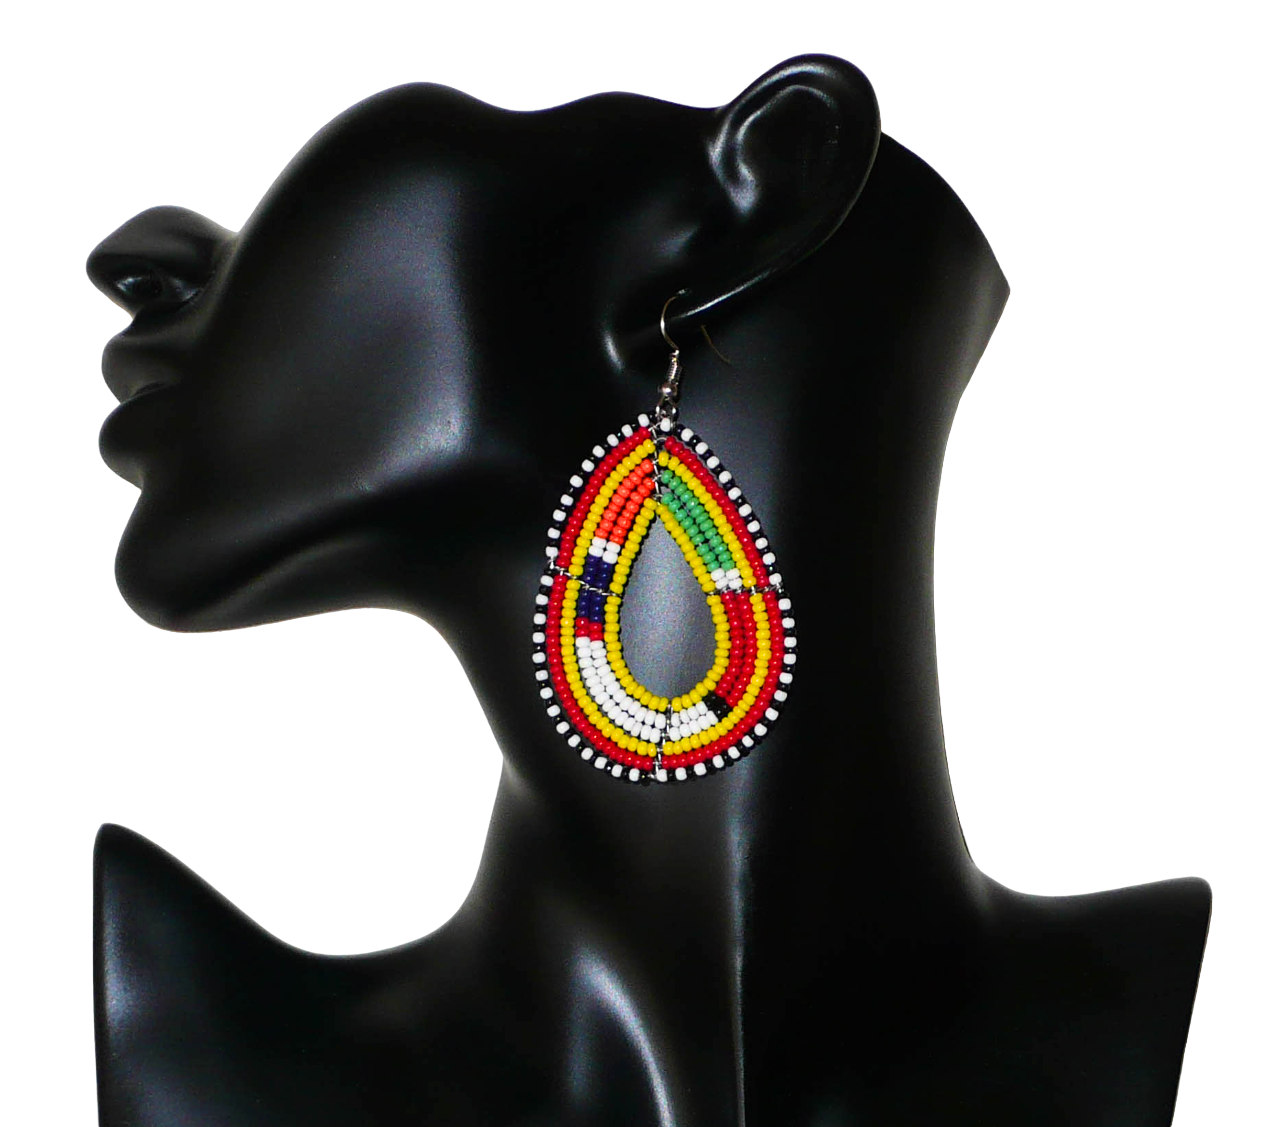 Boucles d'oreilles ethniques de tradition Massai en forme de gouttes faites de perles de rocaille jaunes et multicolores. Elles mesurent 8 cm de long et 4 cm de large et se portent avec des crochets en acier inoxydable sur des oreilles percées. Timeless Fineries